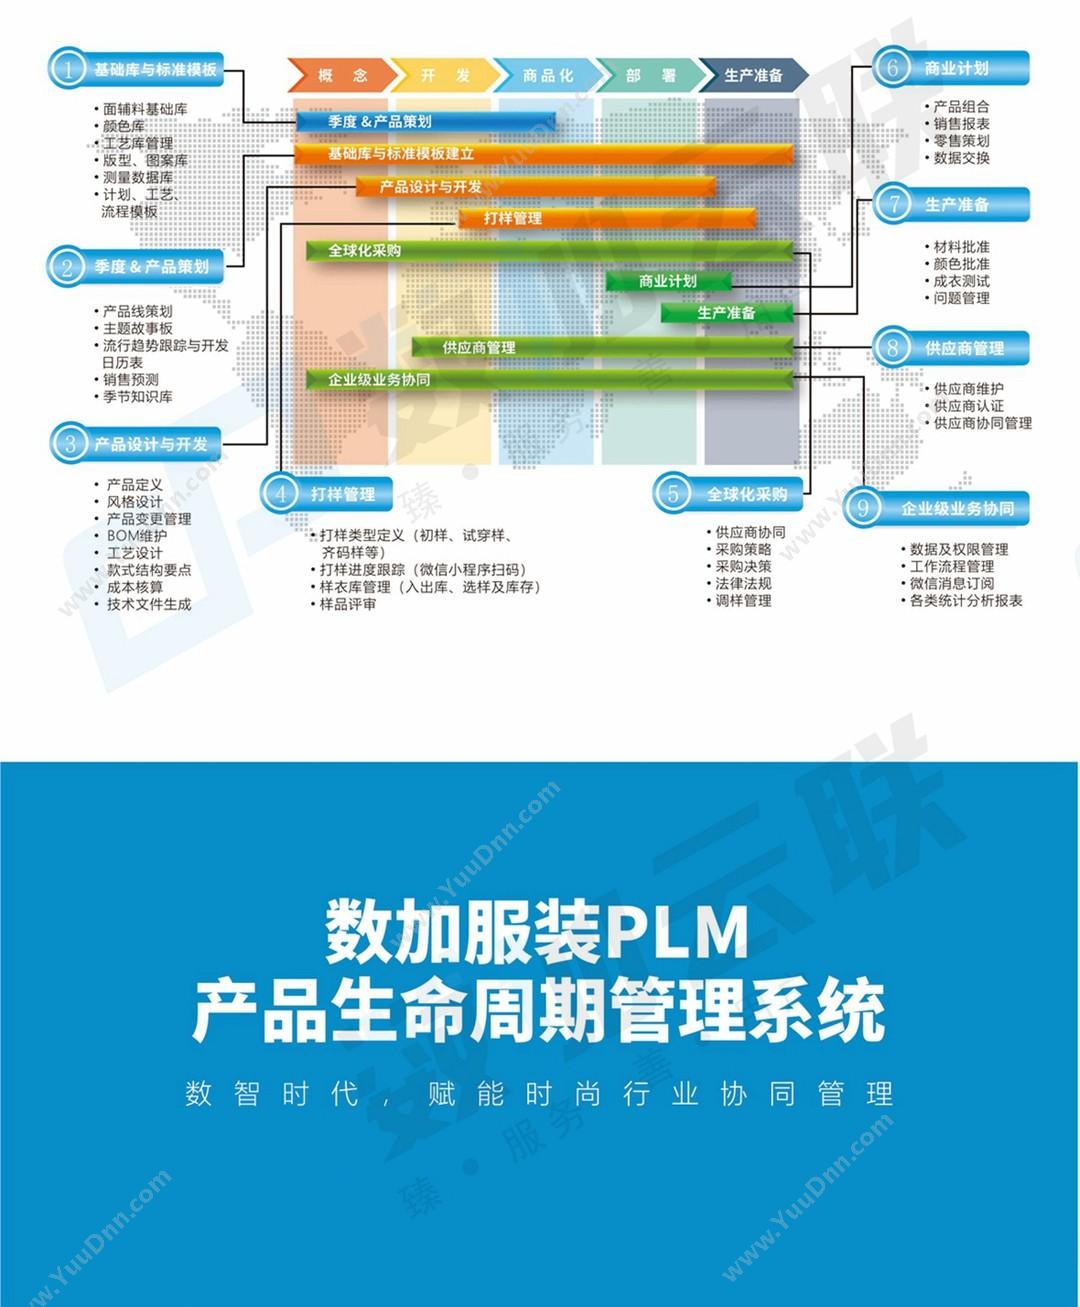 苏州数加物联科技有限公司 数加服装PLM 产品生命周期管理PLM